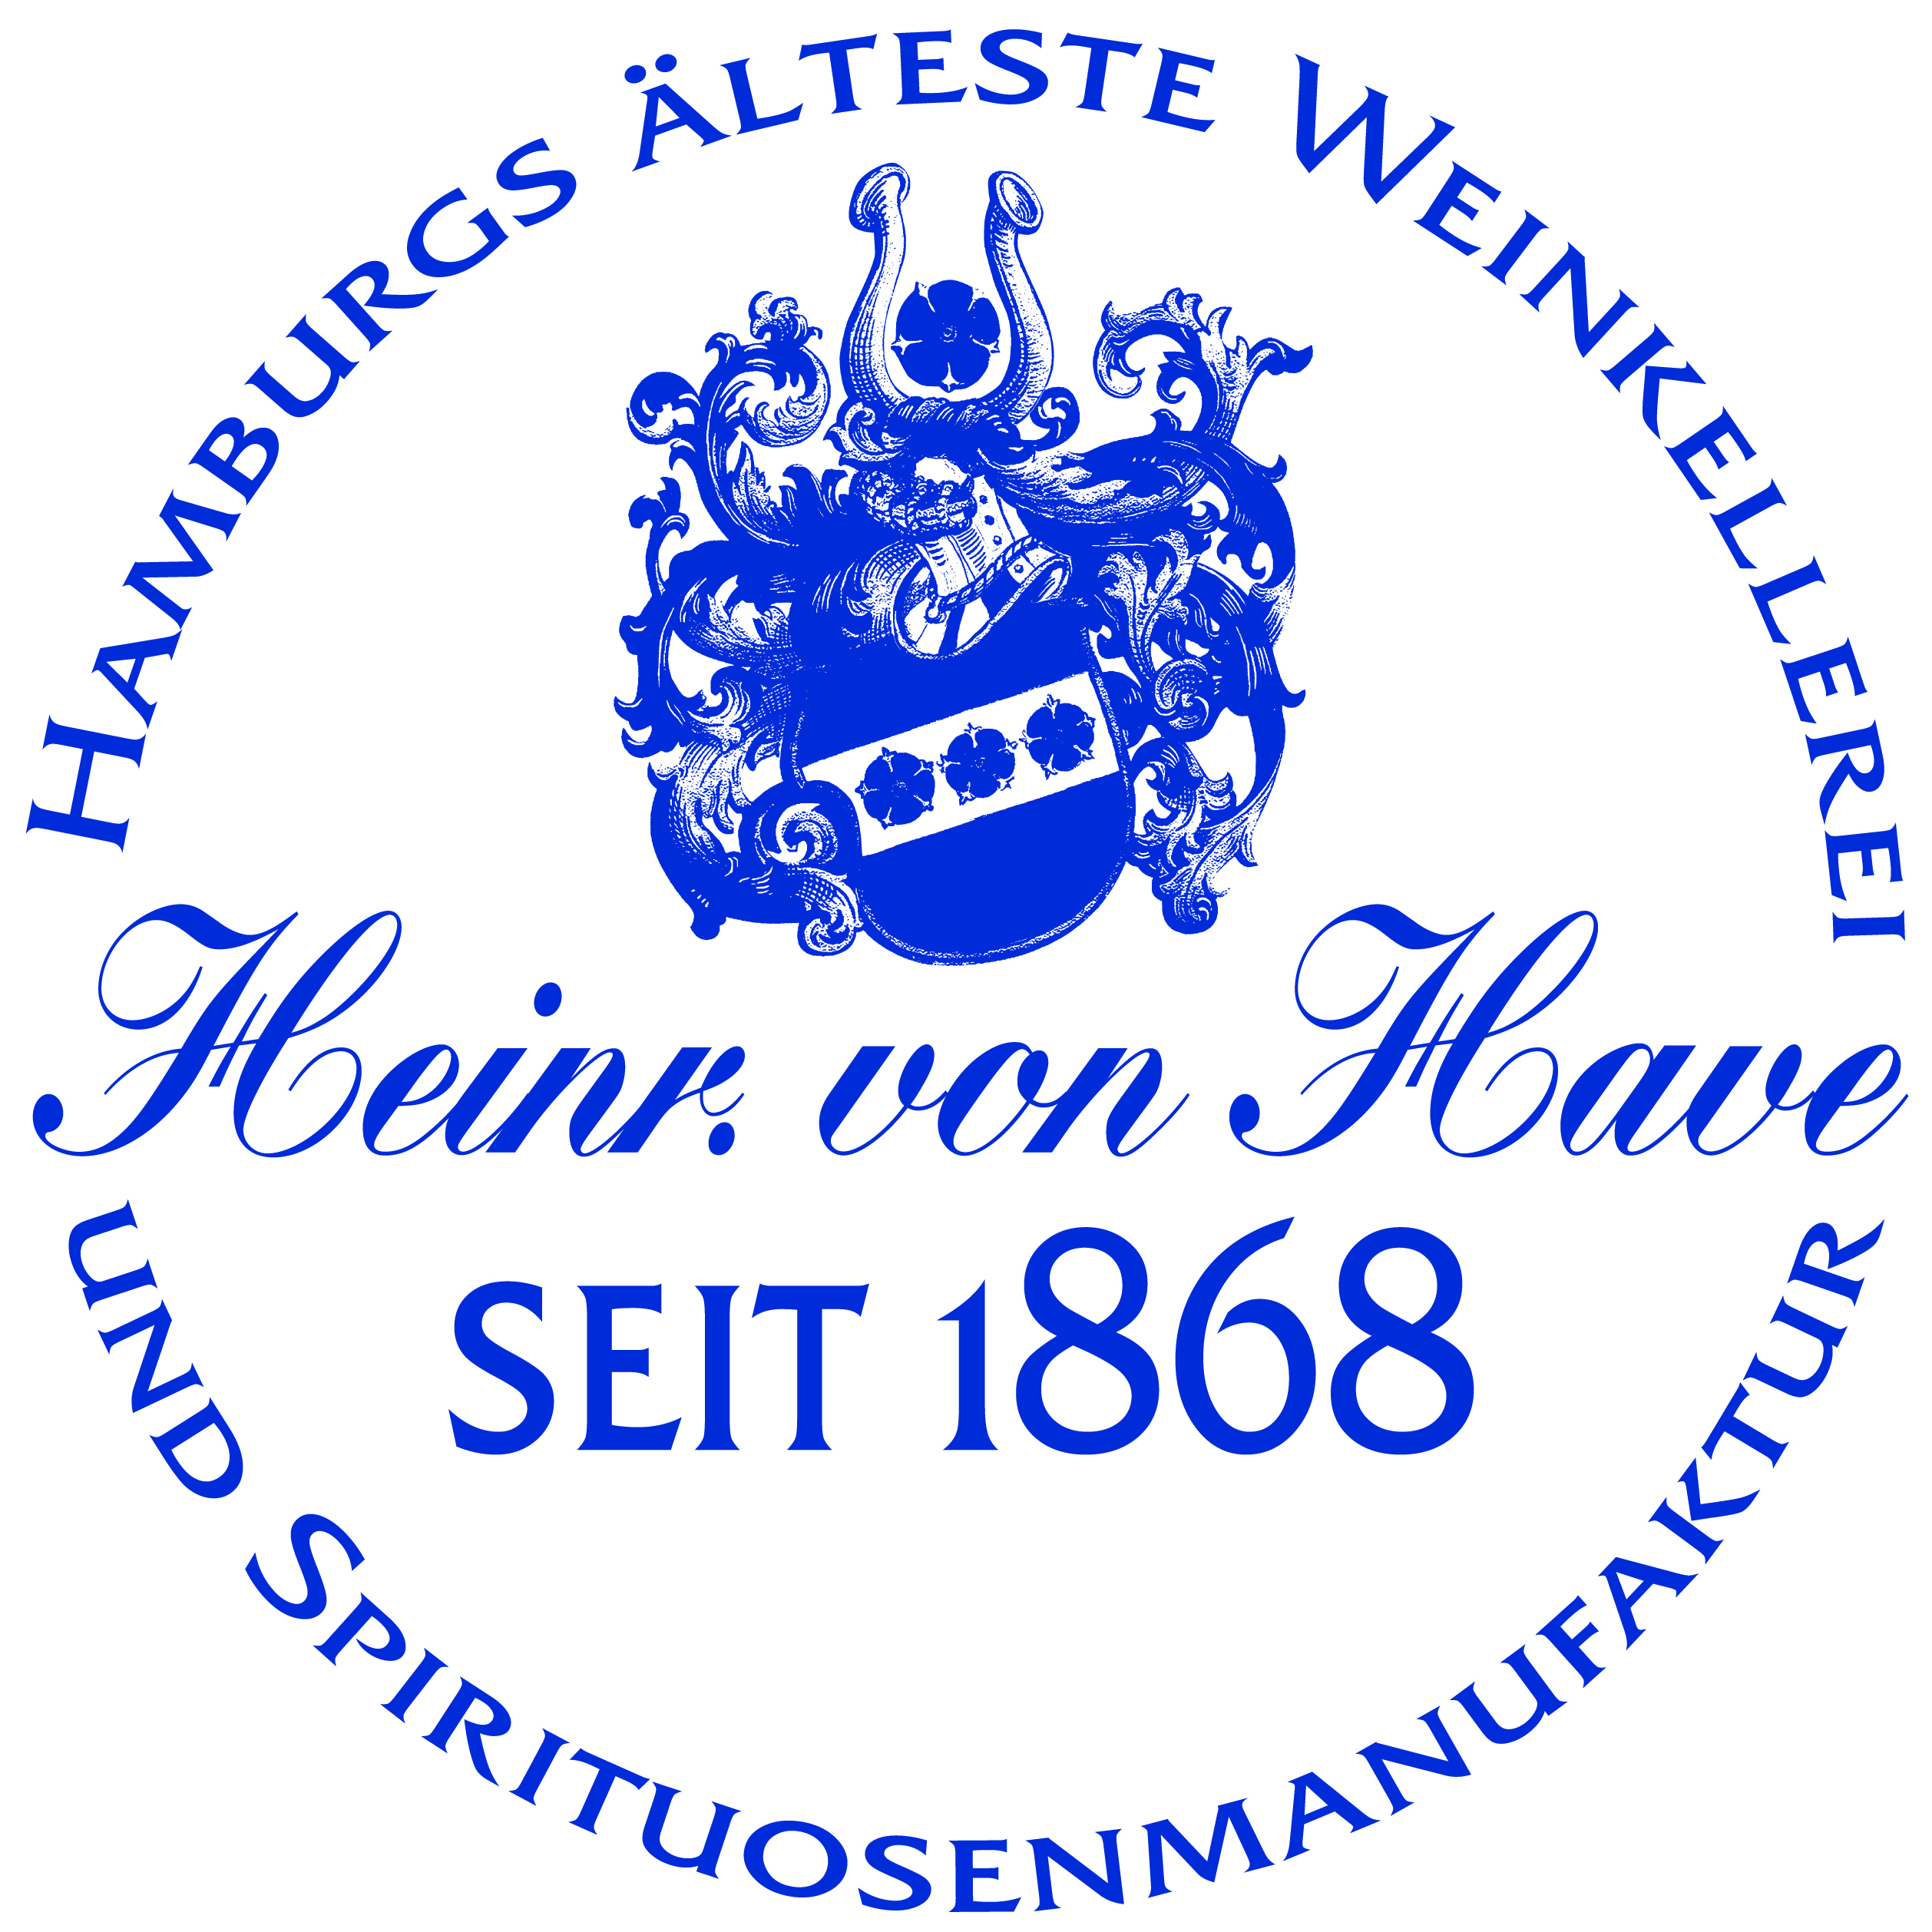 Heinrich von Have